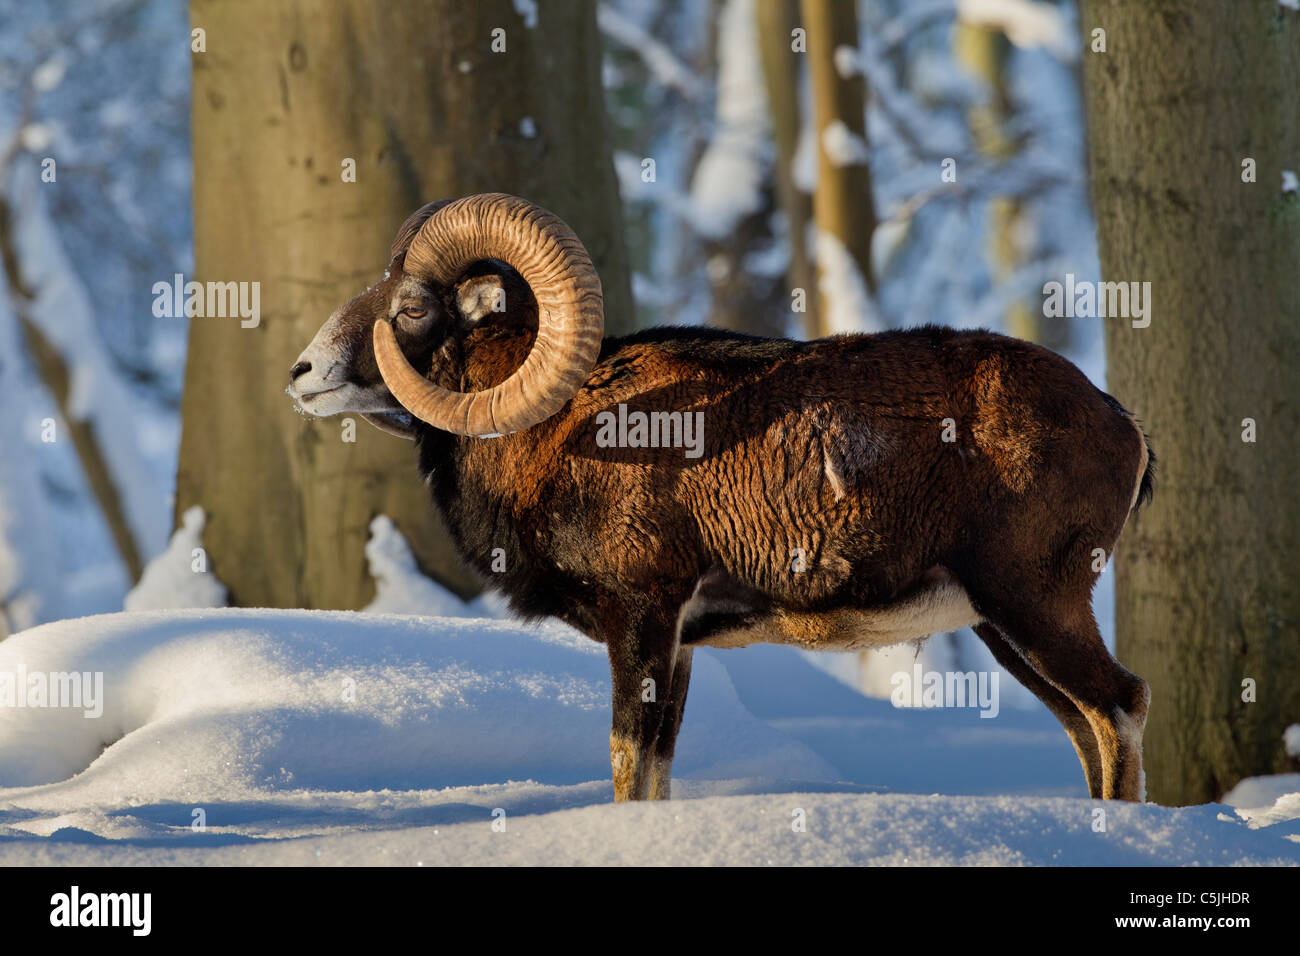 Mouflon (Ovis aries européenne orientalis / Ovis ammon musimon / Ovis gmelini musimon) ram en forêt dans la neige en hiver, Allemagne Banque D'Images